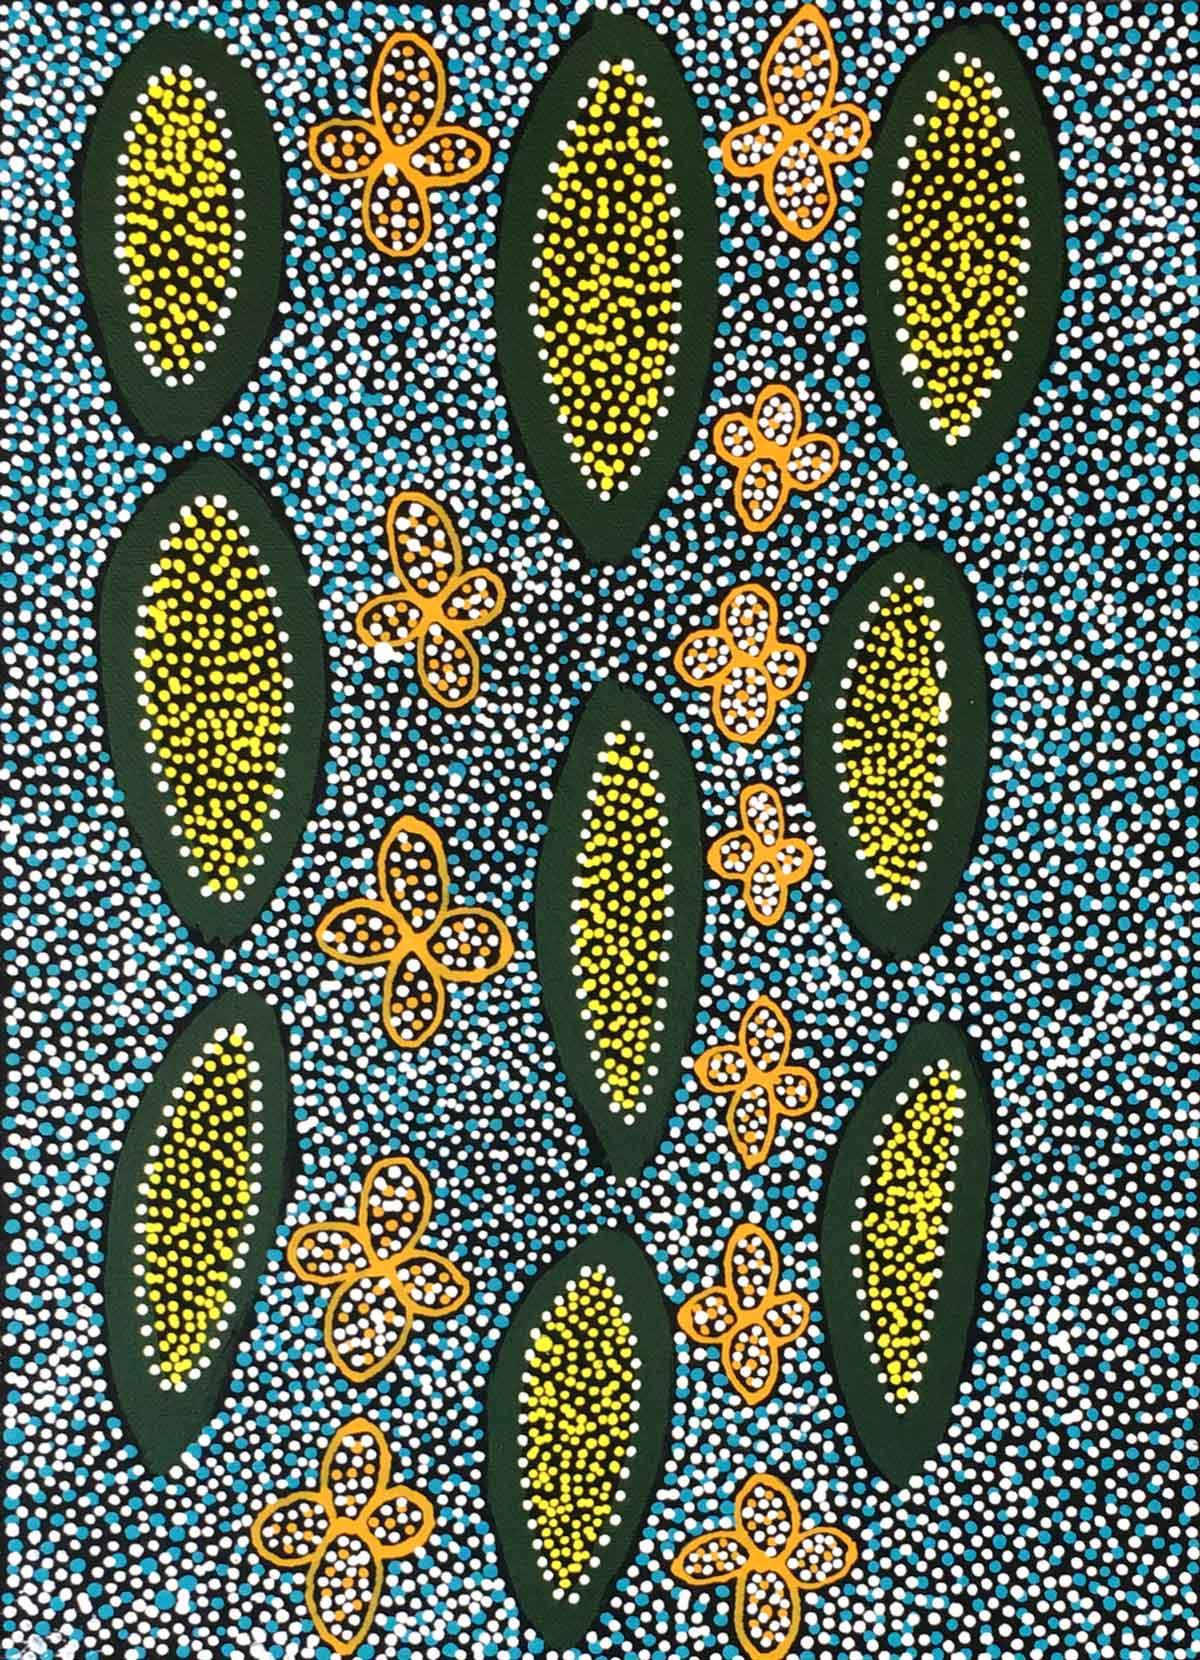 Ilyarnayt by Janice Clarke Kngwarreye. Australian Aboriginal Art.